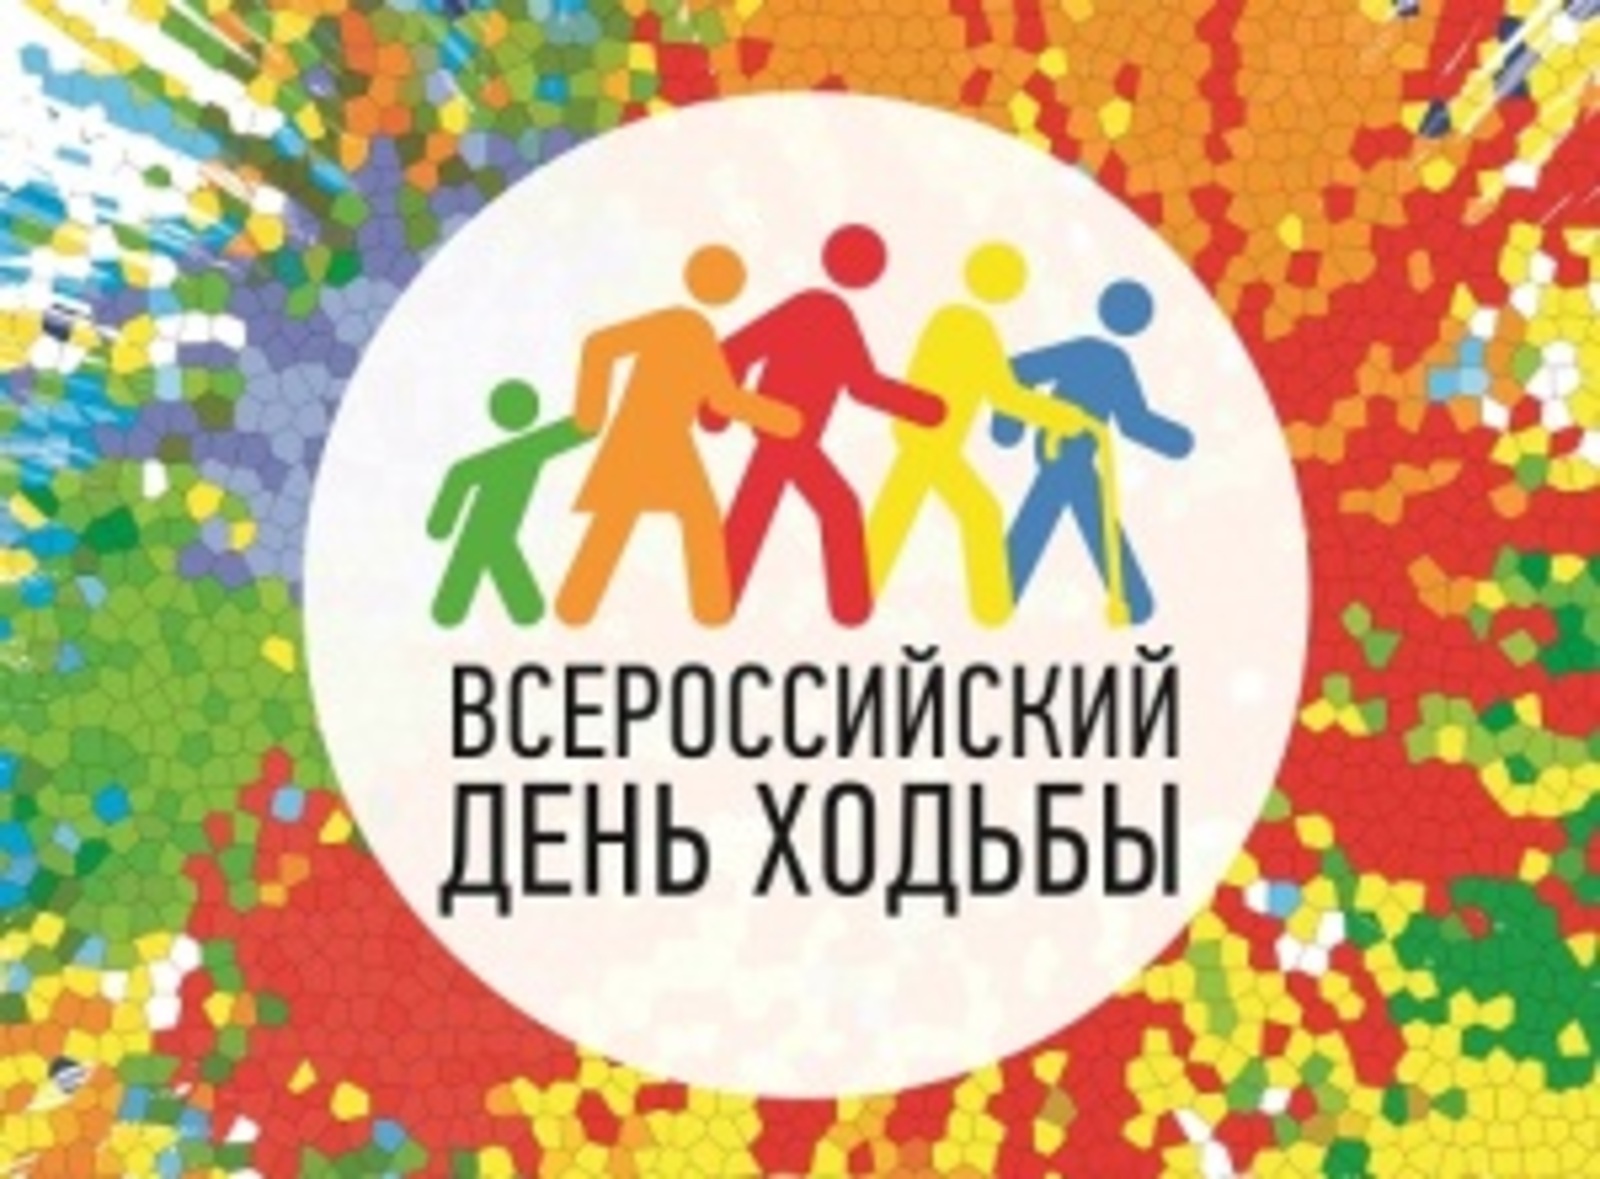 Вместе весело шагать. Присоединяйтесь к Всероссийскому дню ходьбы!